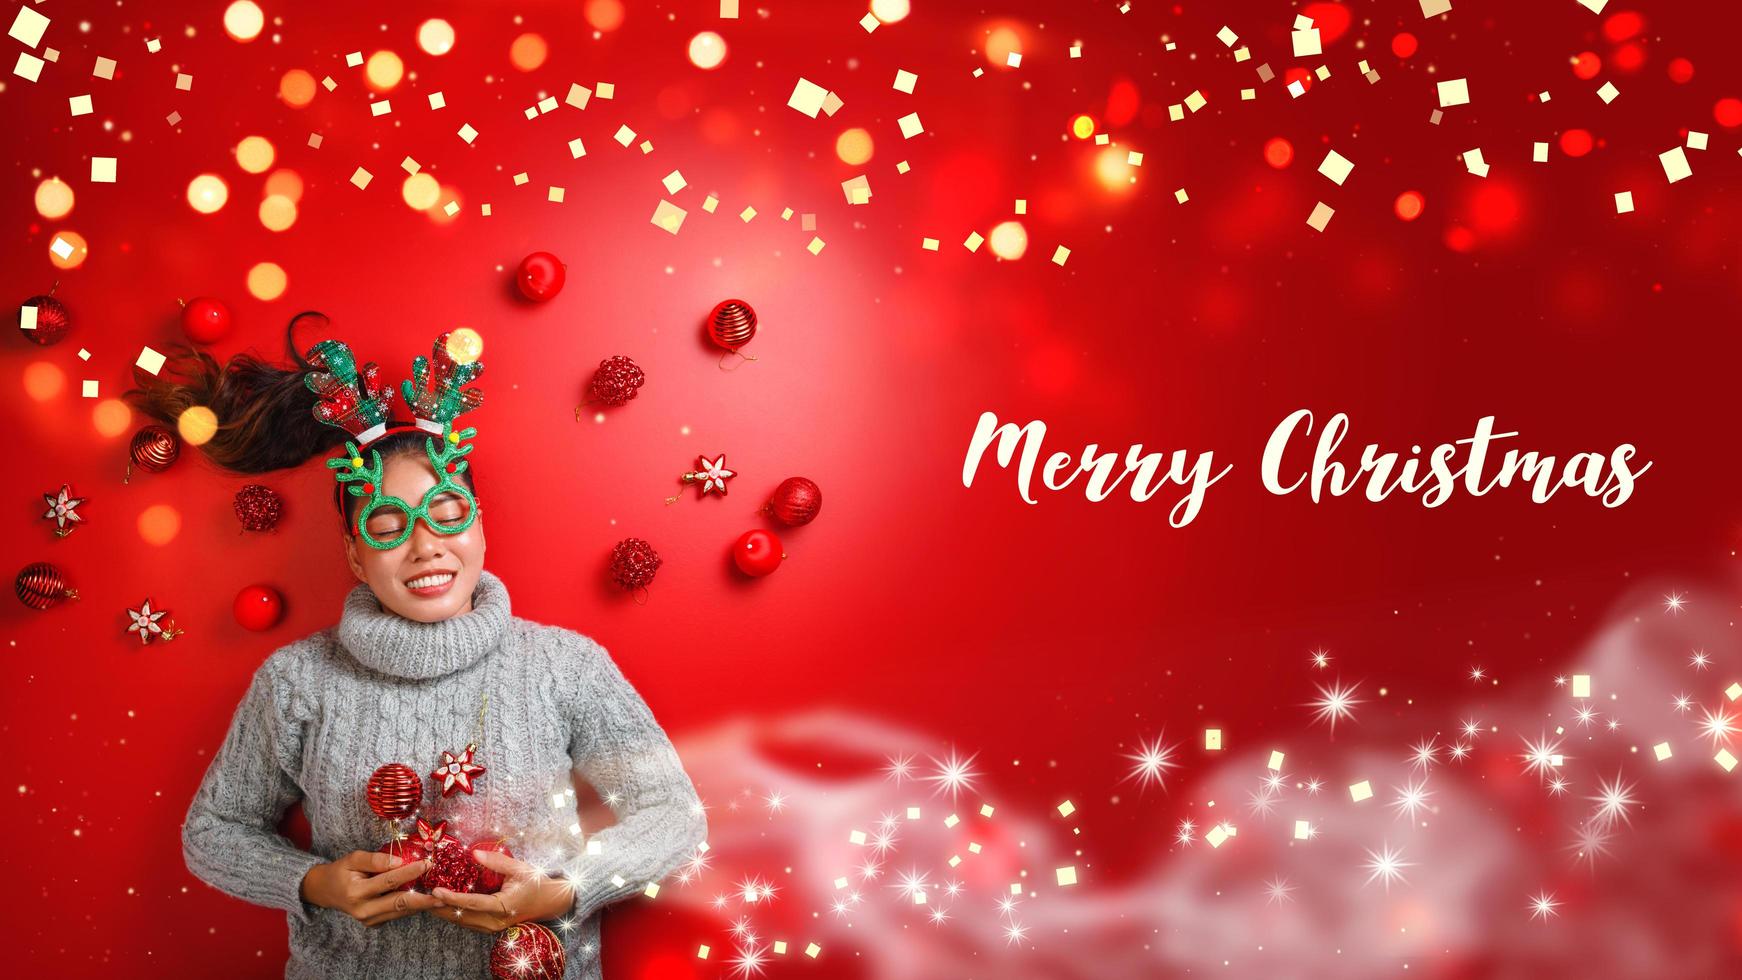 natale capodanno. giovane donna vestita in maglione caldo con oggetti di scena palla rossa con ornamenti natalizi in vacanza su sfondo rosso brillante. concetto buon natale. foto